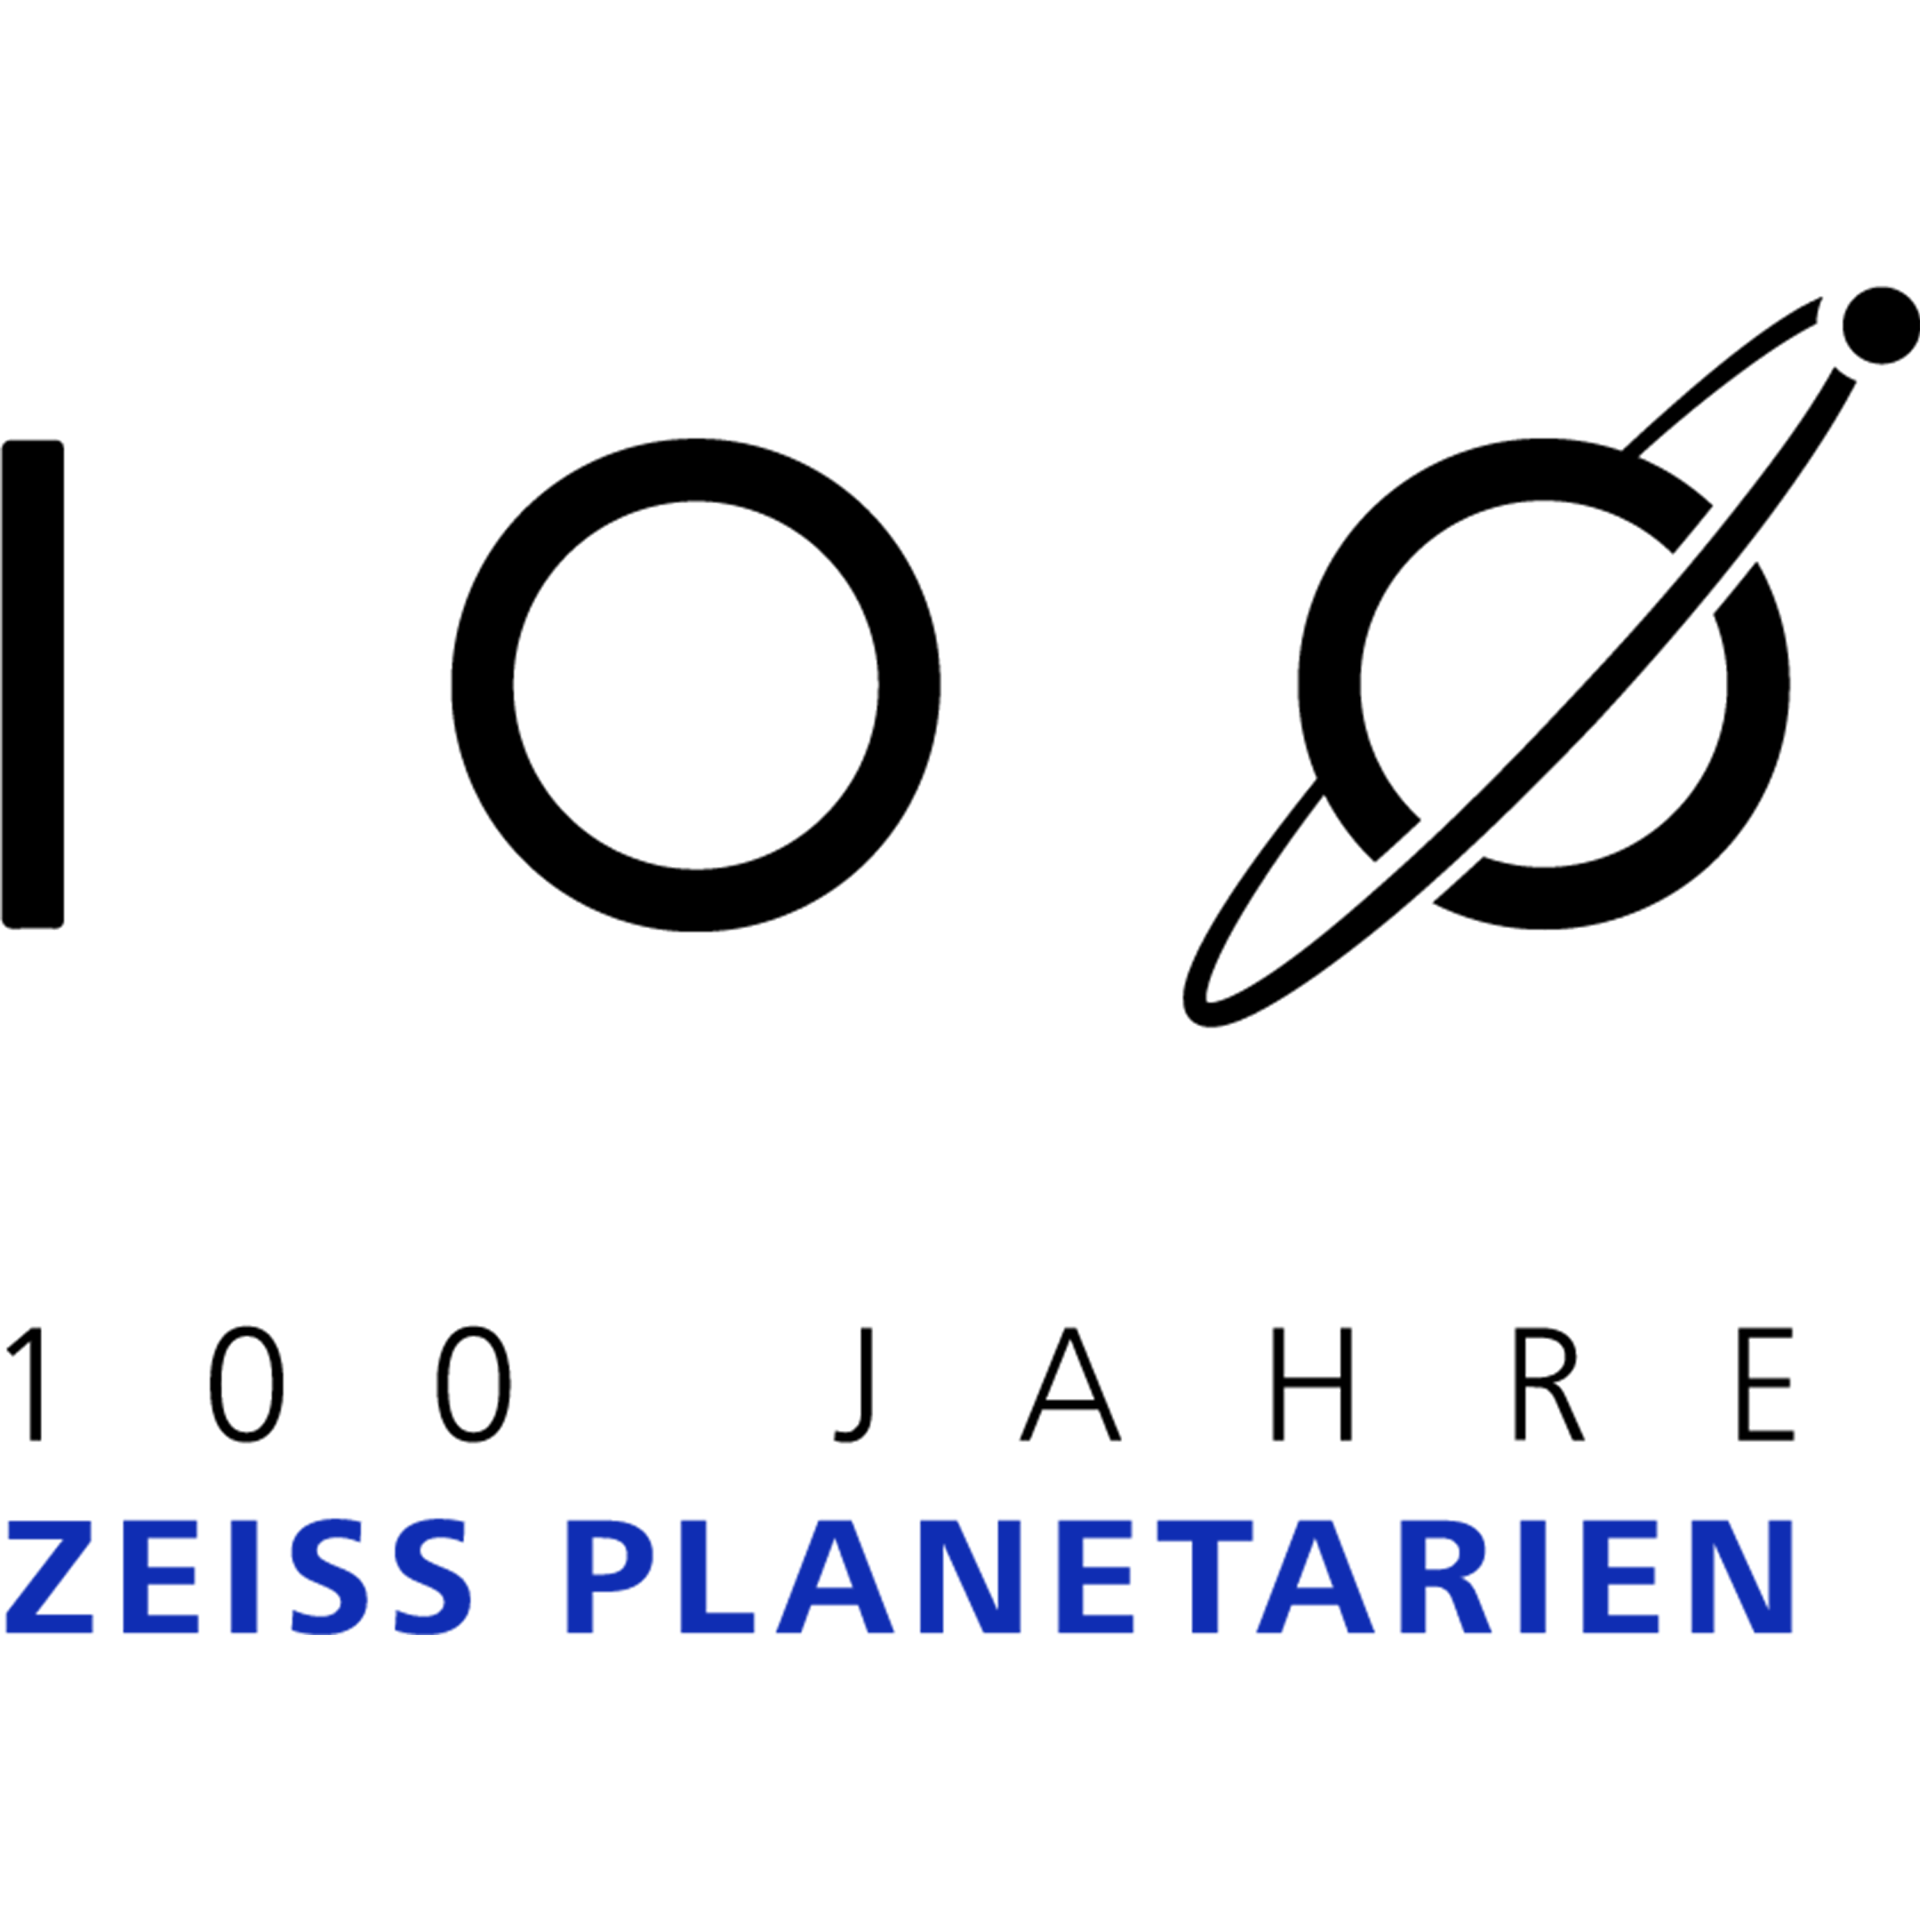 100 Jahre ZEISS Planetarien Signet